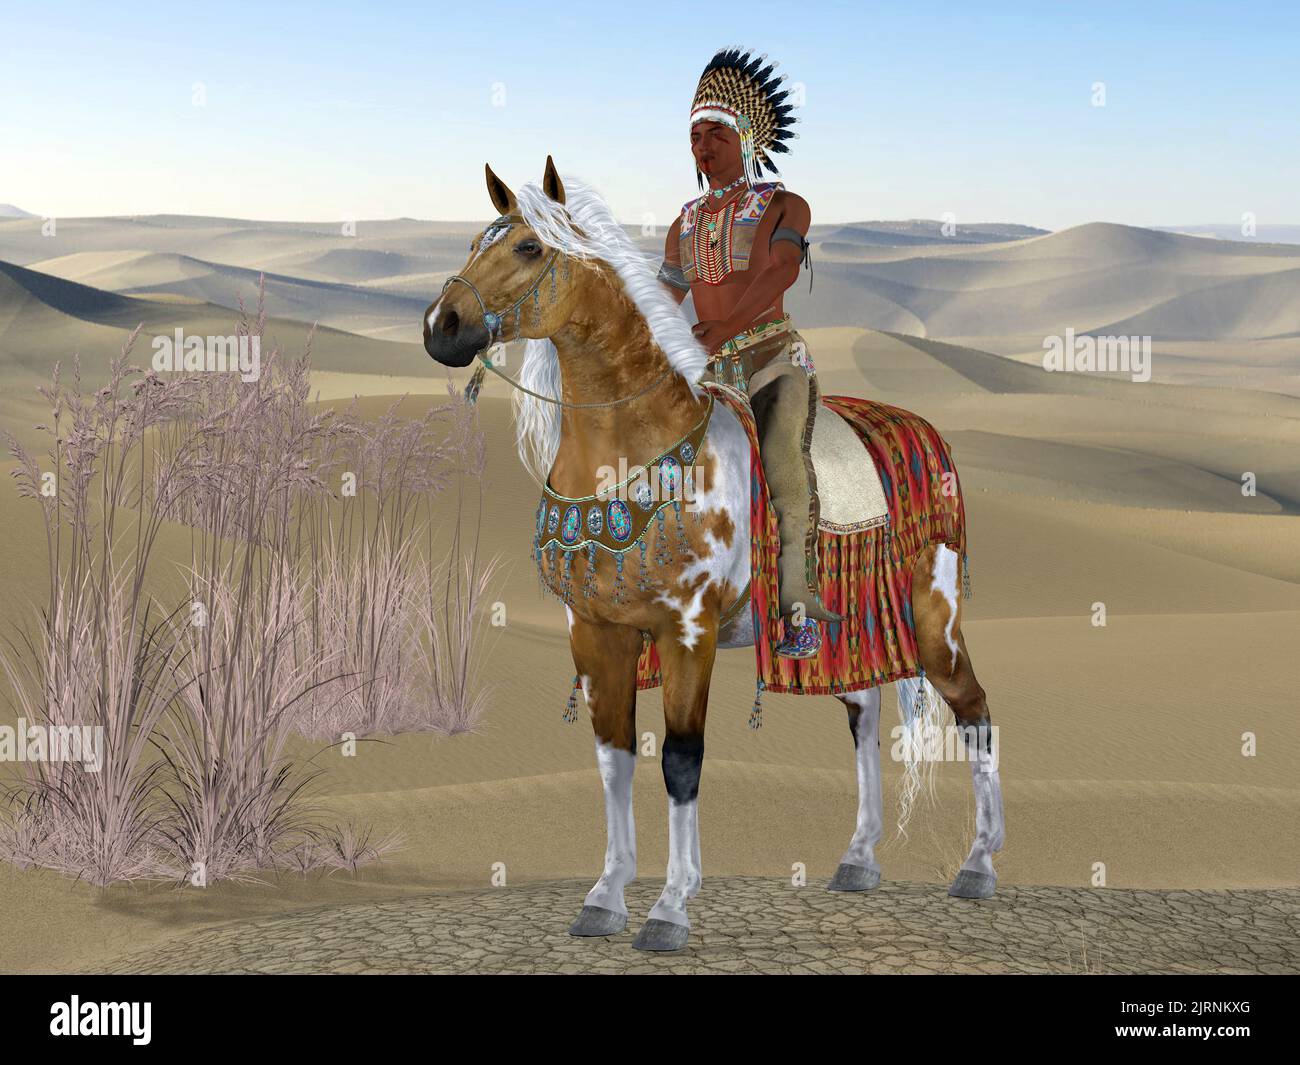 Indian Soaring Eagle - un Indien américain roule son cheval de peinture dans un paysage désertique avec de la peinture de guerre sur son visage. Banque D'Images